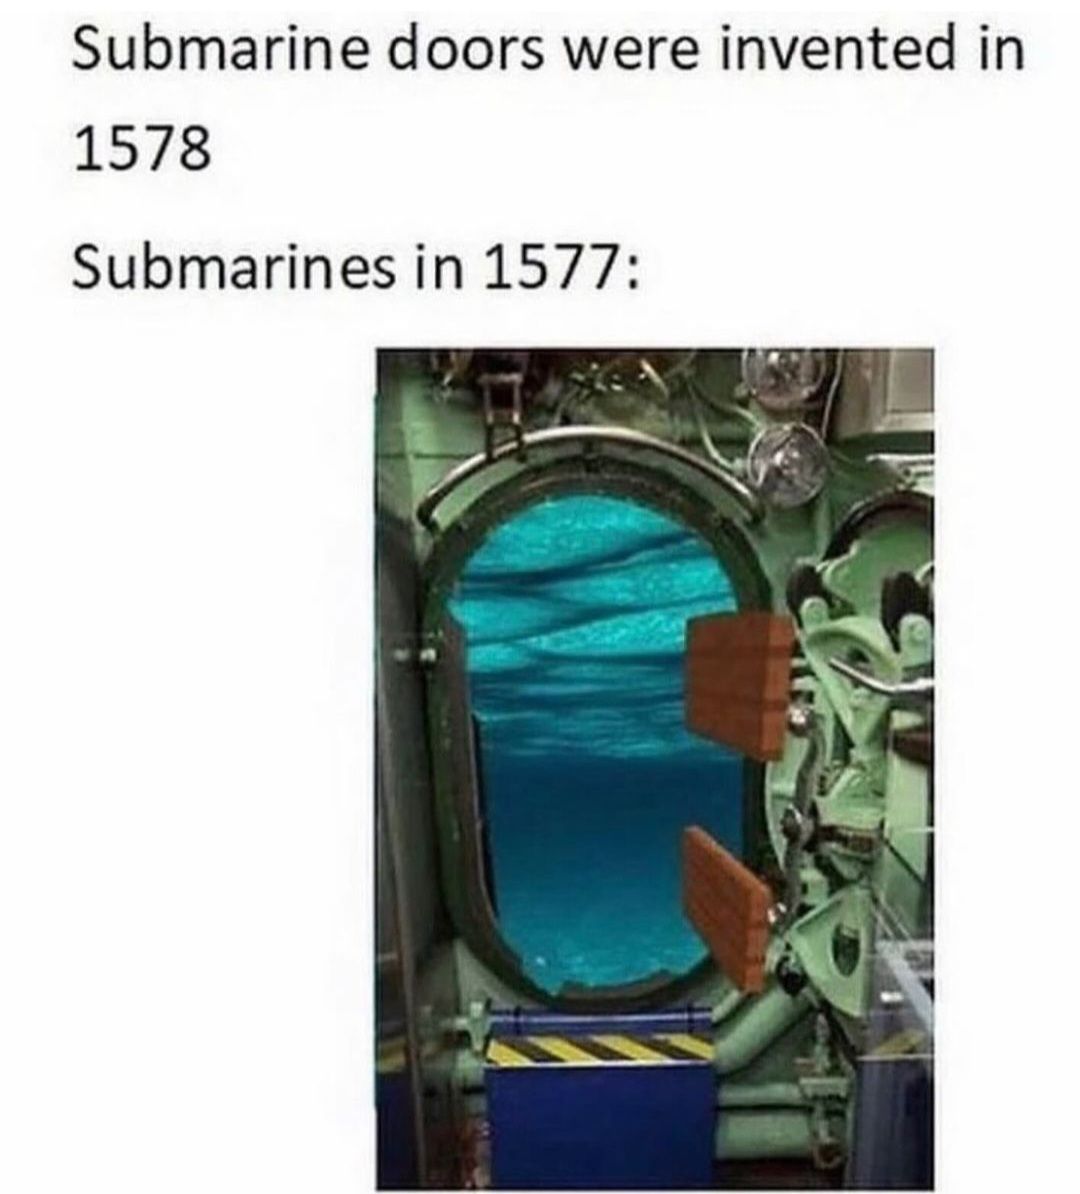 Submarine doors were invented in
1578
Submarines in 1577: